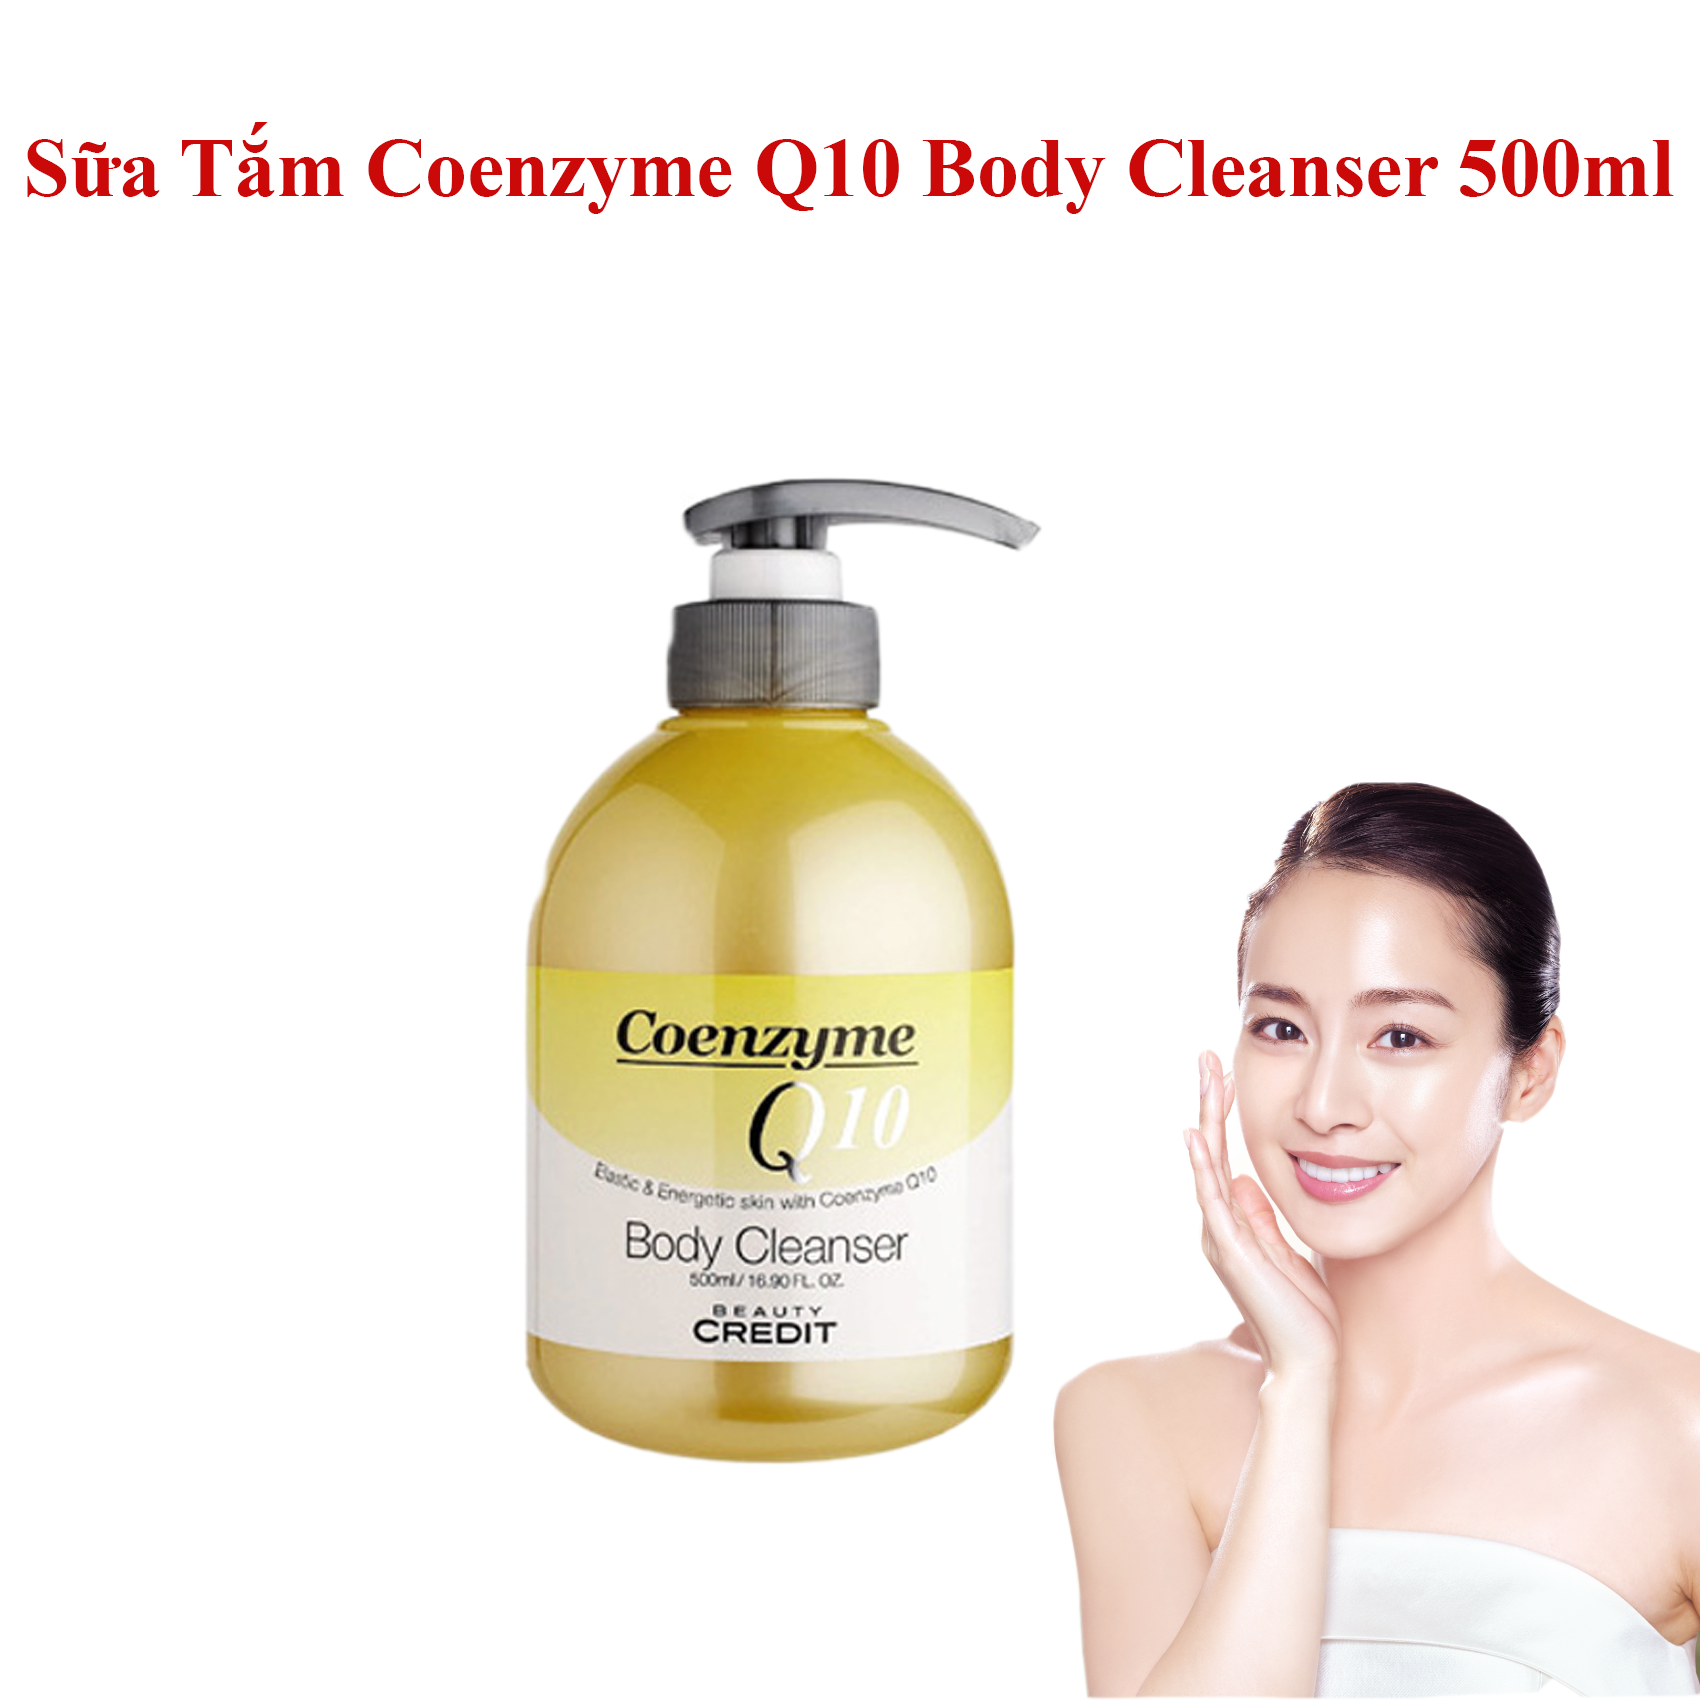 sua-tam-sua-tam-coenzyme-q10-body-cleanser-500ml-han-quoc-987